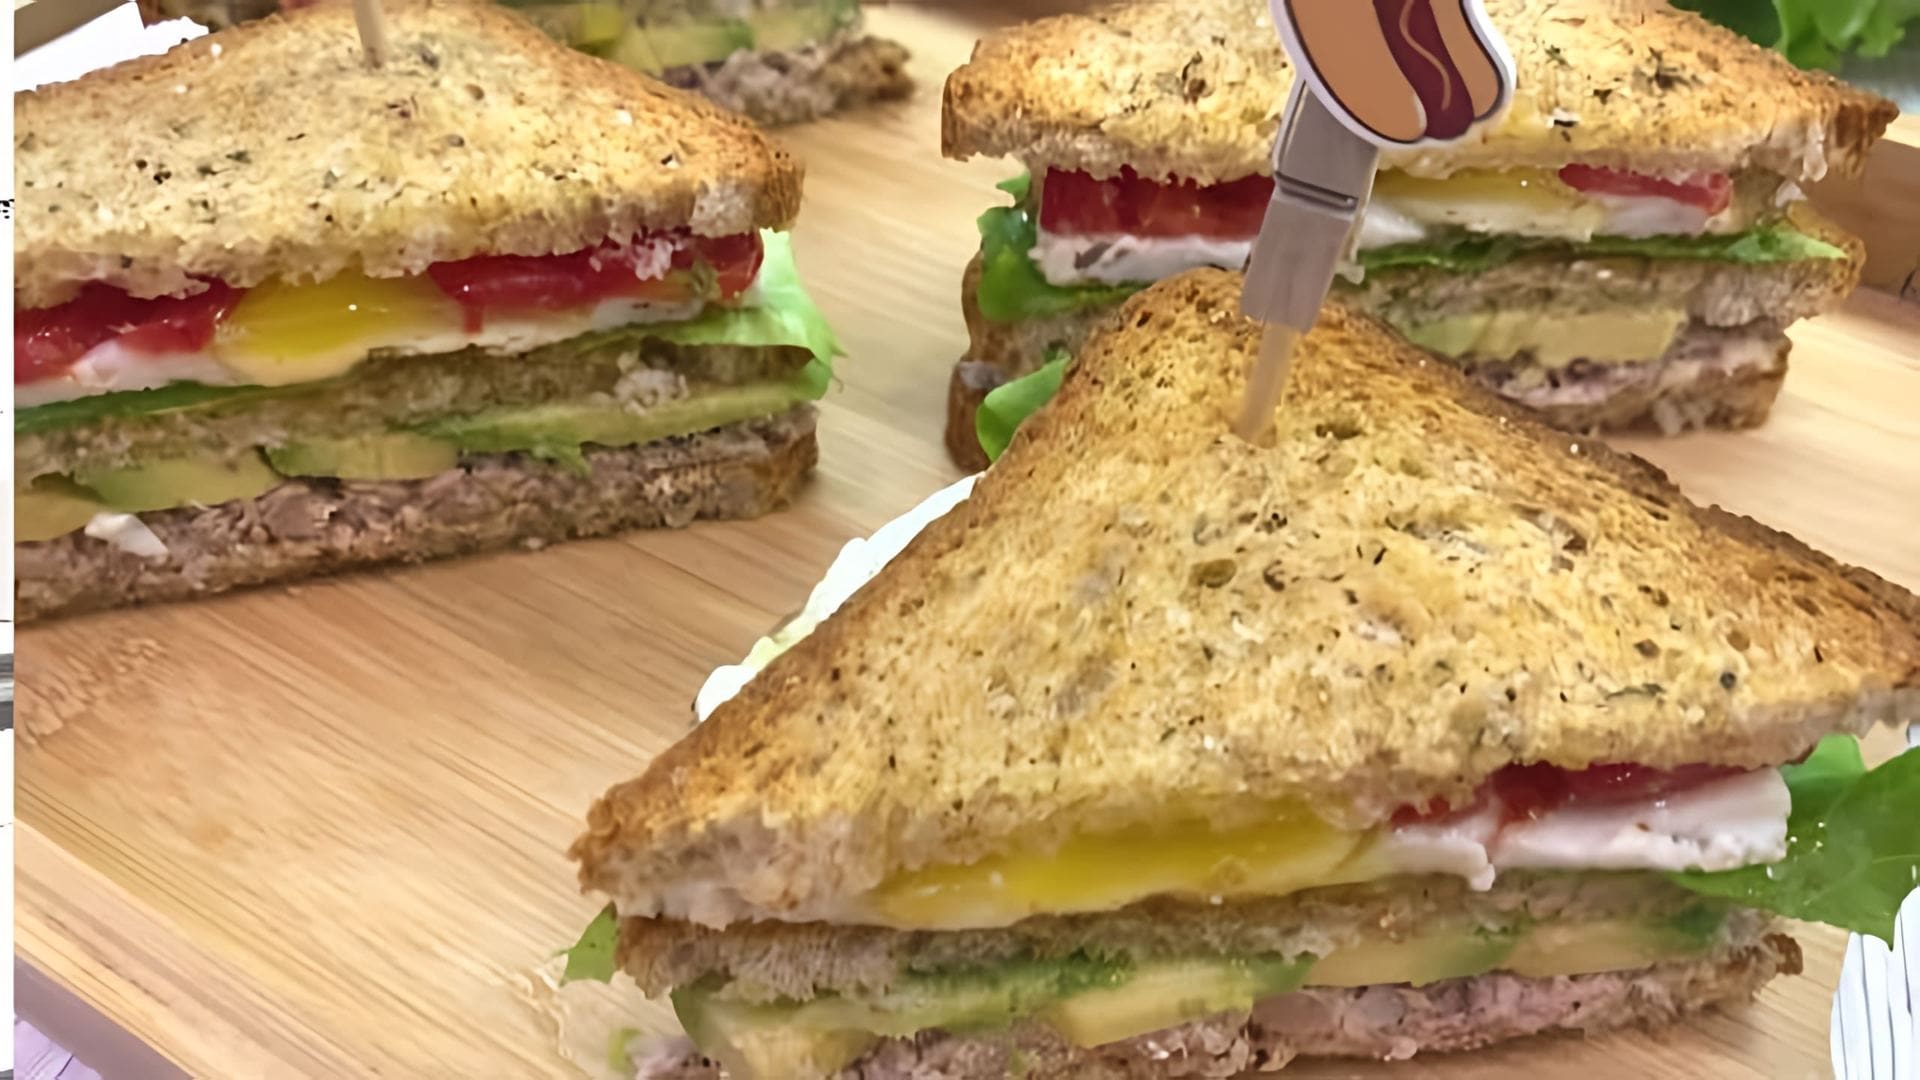 Клаб сэндвич с тунцом и авокадо - это вкусное и питательное блюдо, которое можно приготовить в домашних условиях